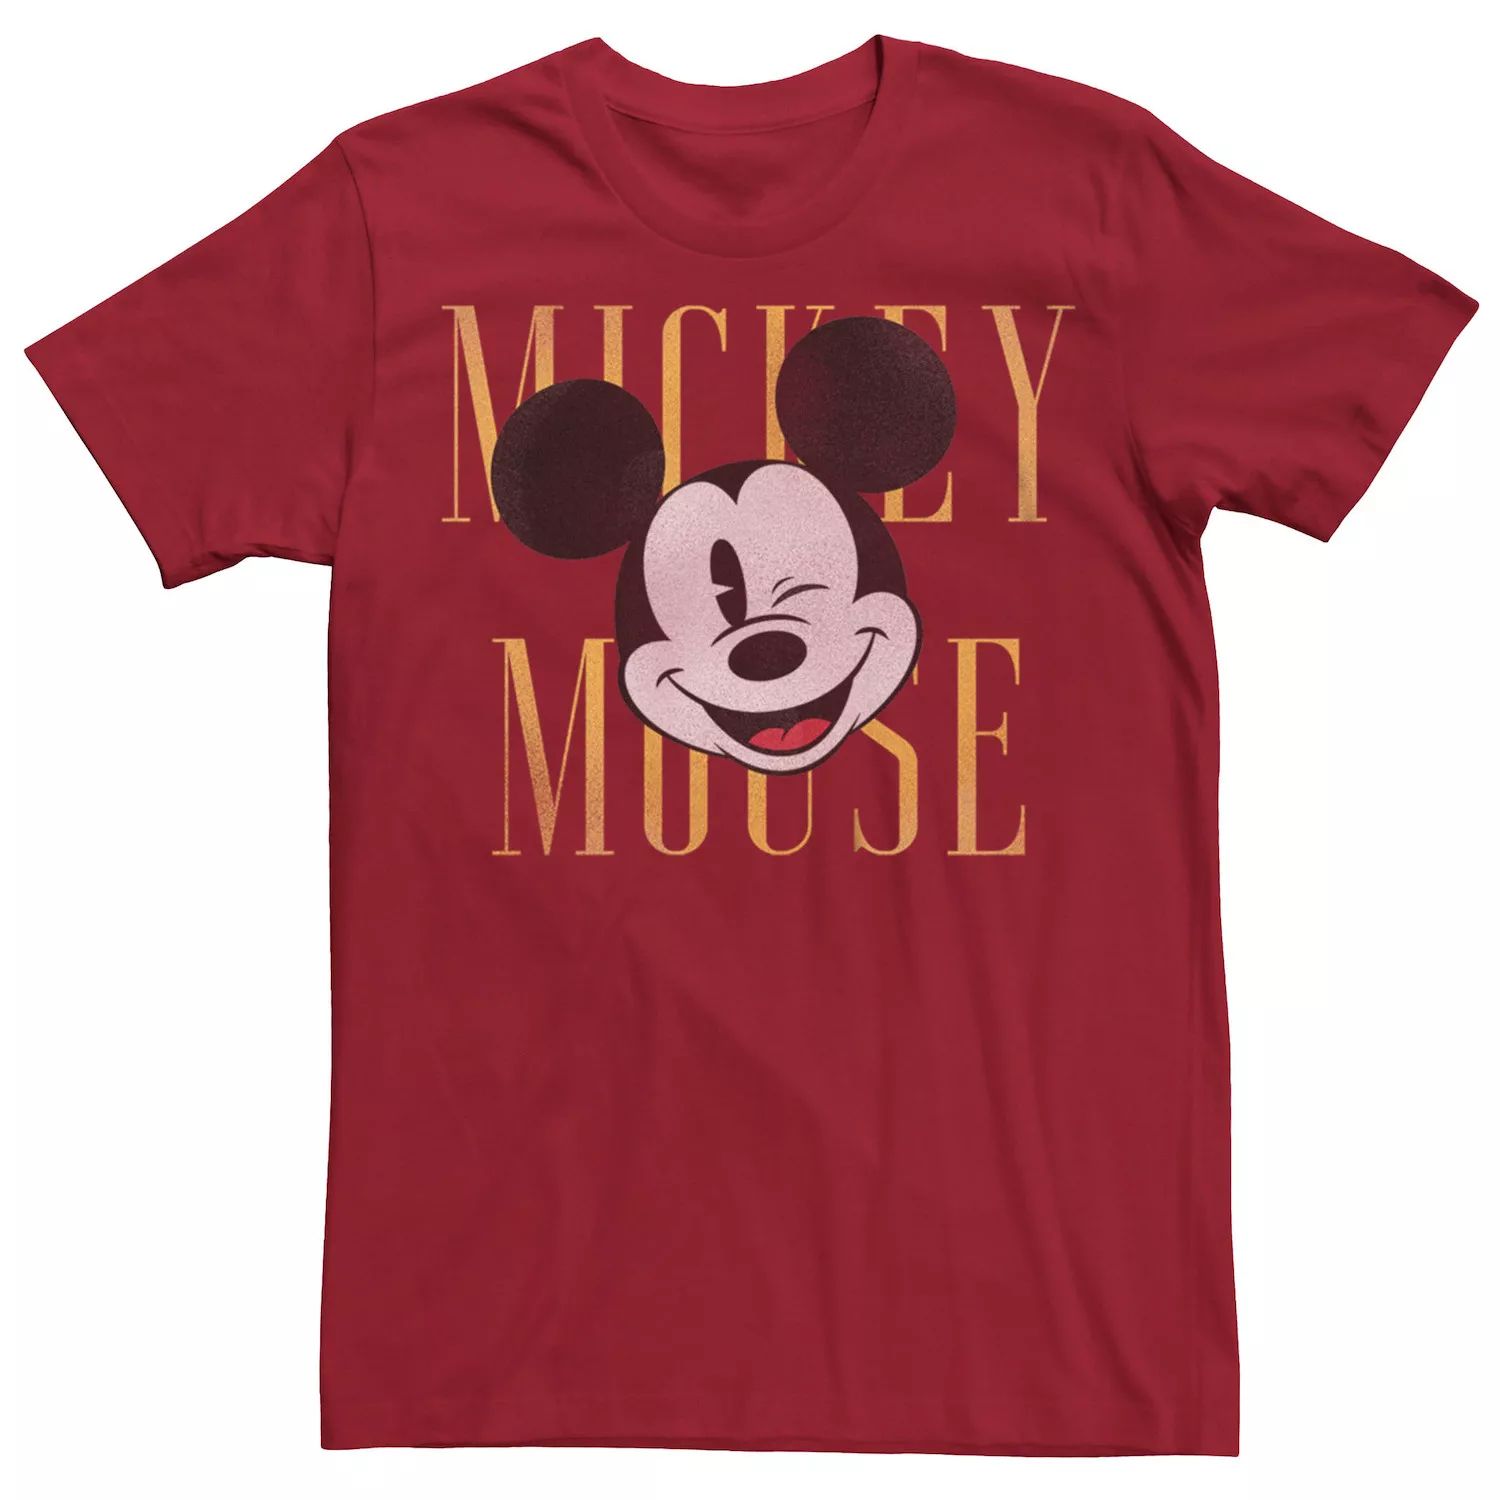 Мужская футболка с подмигивающим изображением Микки Мауса Disney Licensed Character мужская футболка с изображением микки мауса диснея множество микки licensed character